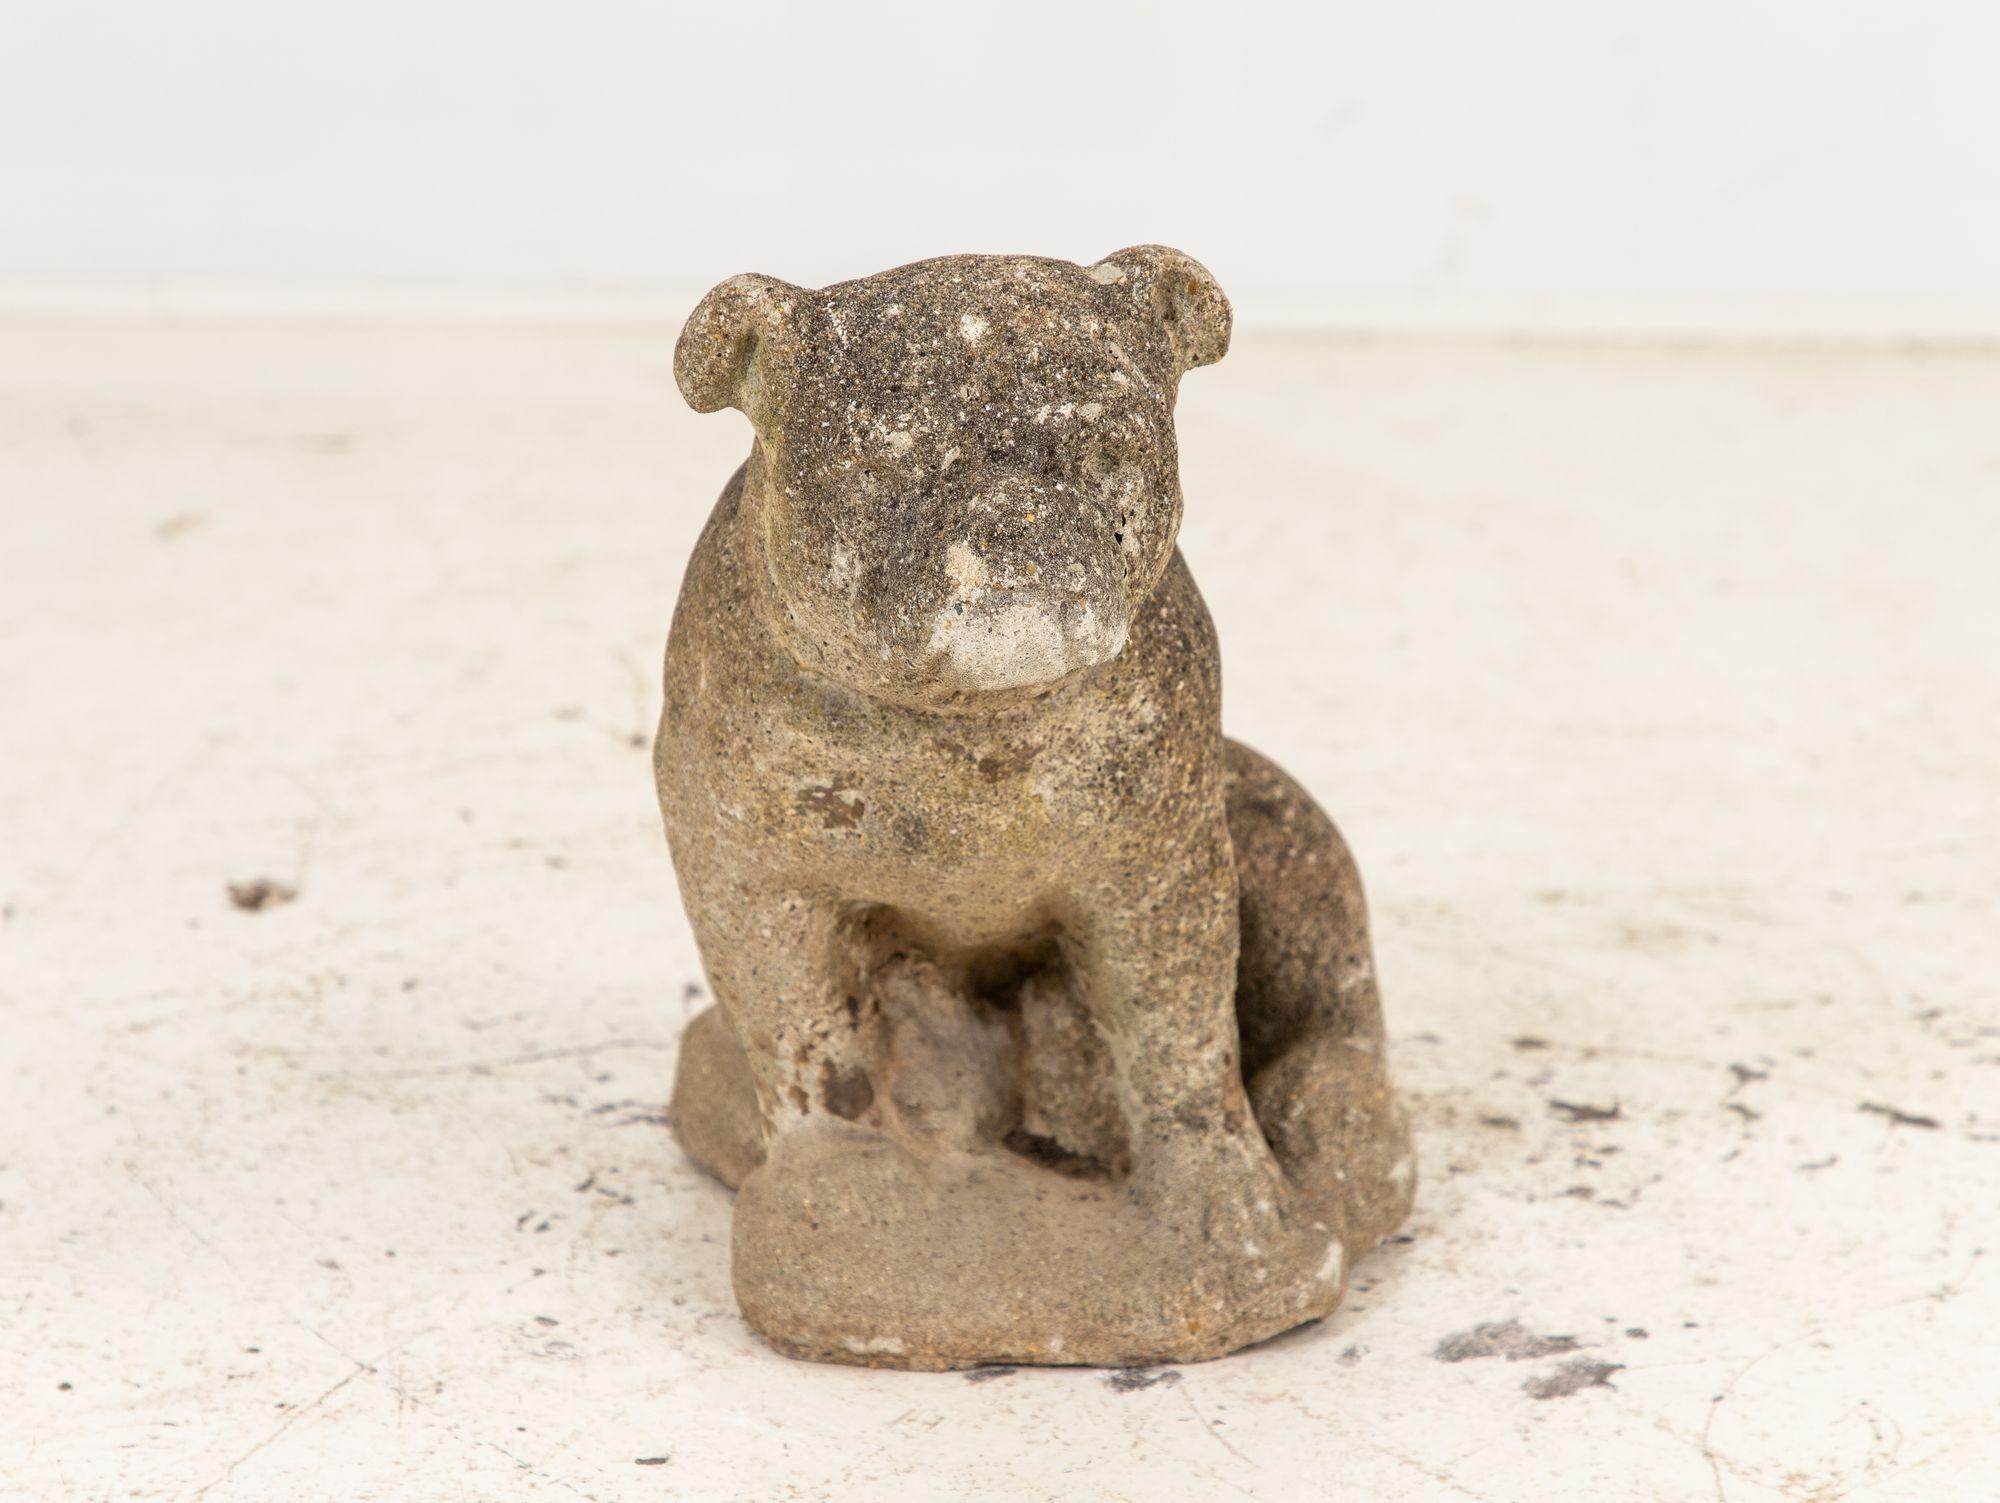 Diese aus Beton gefertigte englische Bulldogge aus der Mitte des 20. Jahrhunderts hat eine bezaubernde Patina, die ihren Charme noch verstärkt. Trotz kleinerer Mängel hat es seine ursprüngliche Form mit bemerkenswerter Integrität bewahrt. Die